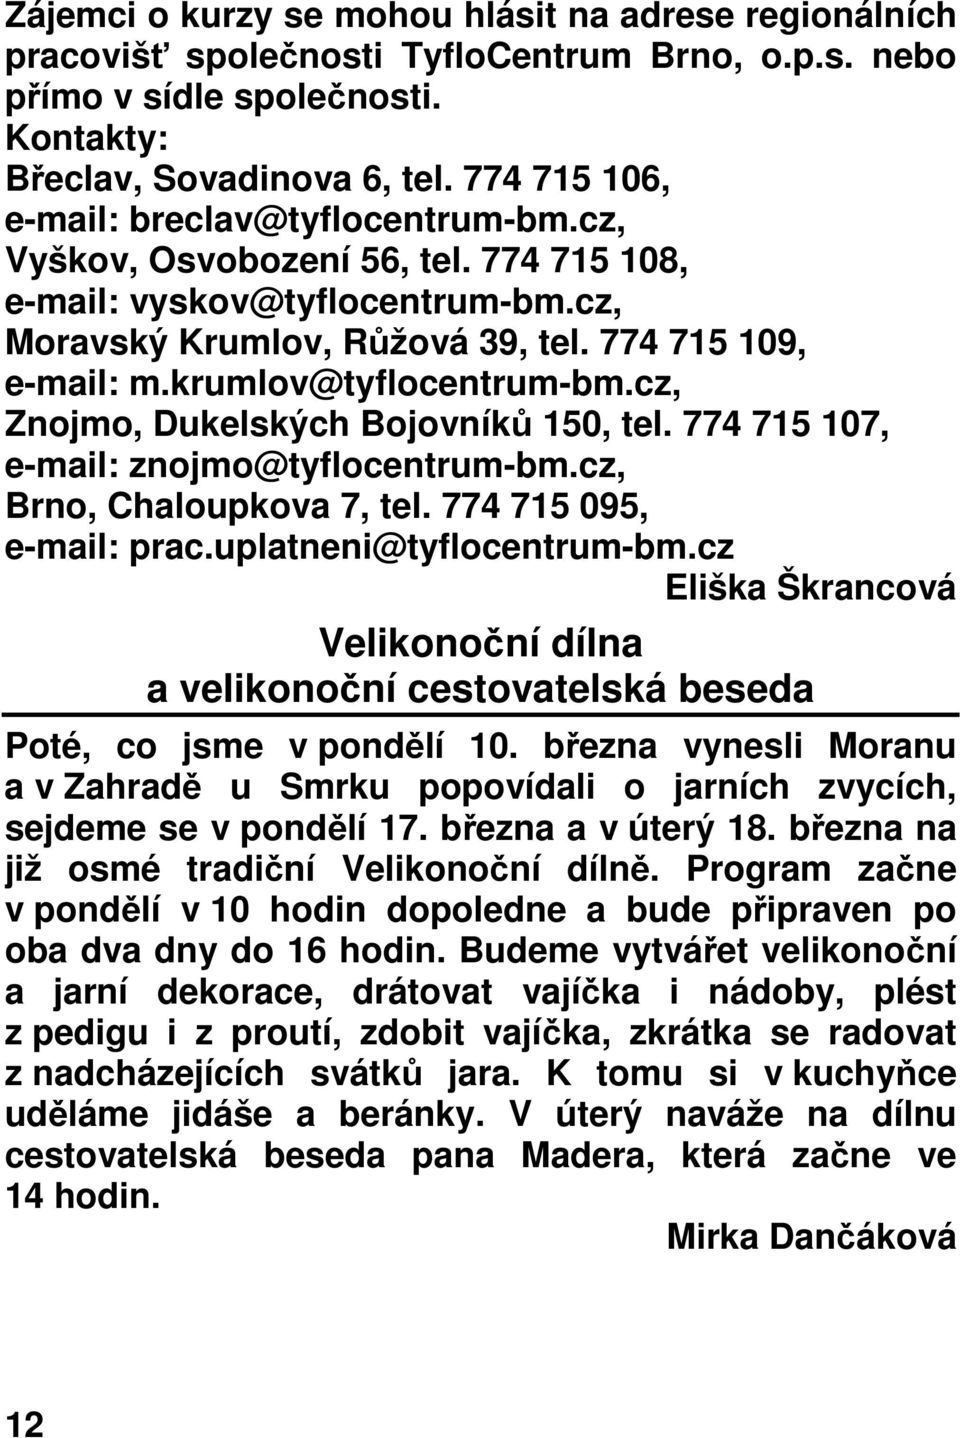 krumlov@tyflocentrum-bm.cz, Znojmo, Dukelských Bojovníků 150, tel. 774 715 107, e-mail: znojmo@tyflocentrum-bm.cz, Brno, Chaloupkova 7, tel. 774 715 095, e-mail: prac.uplatneni@tyflocentrum-bm.